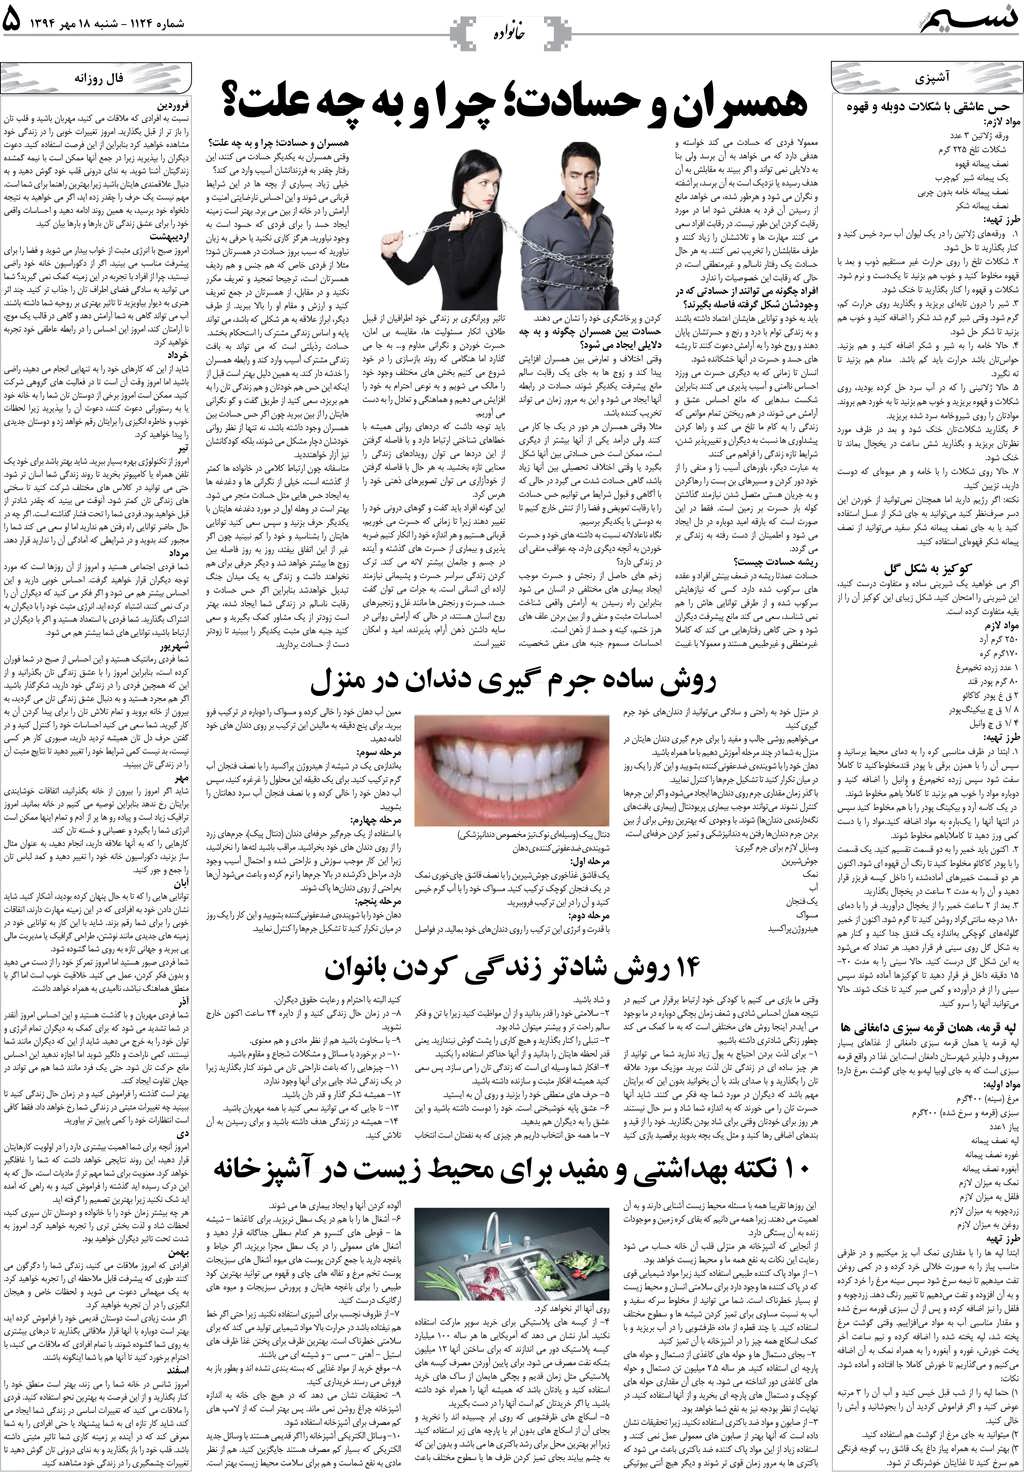 صفحه خانواده روزنامه نسیم شماره 1124